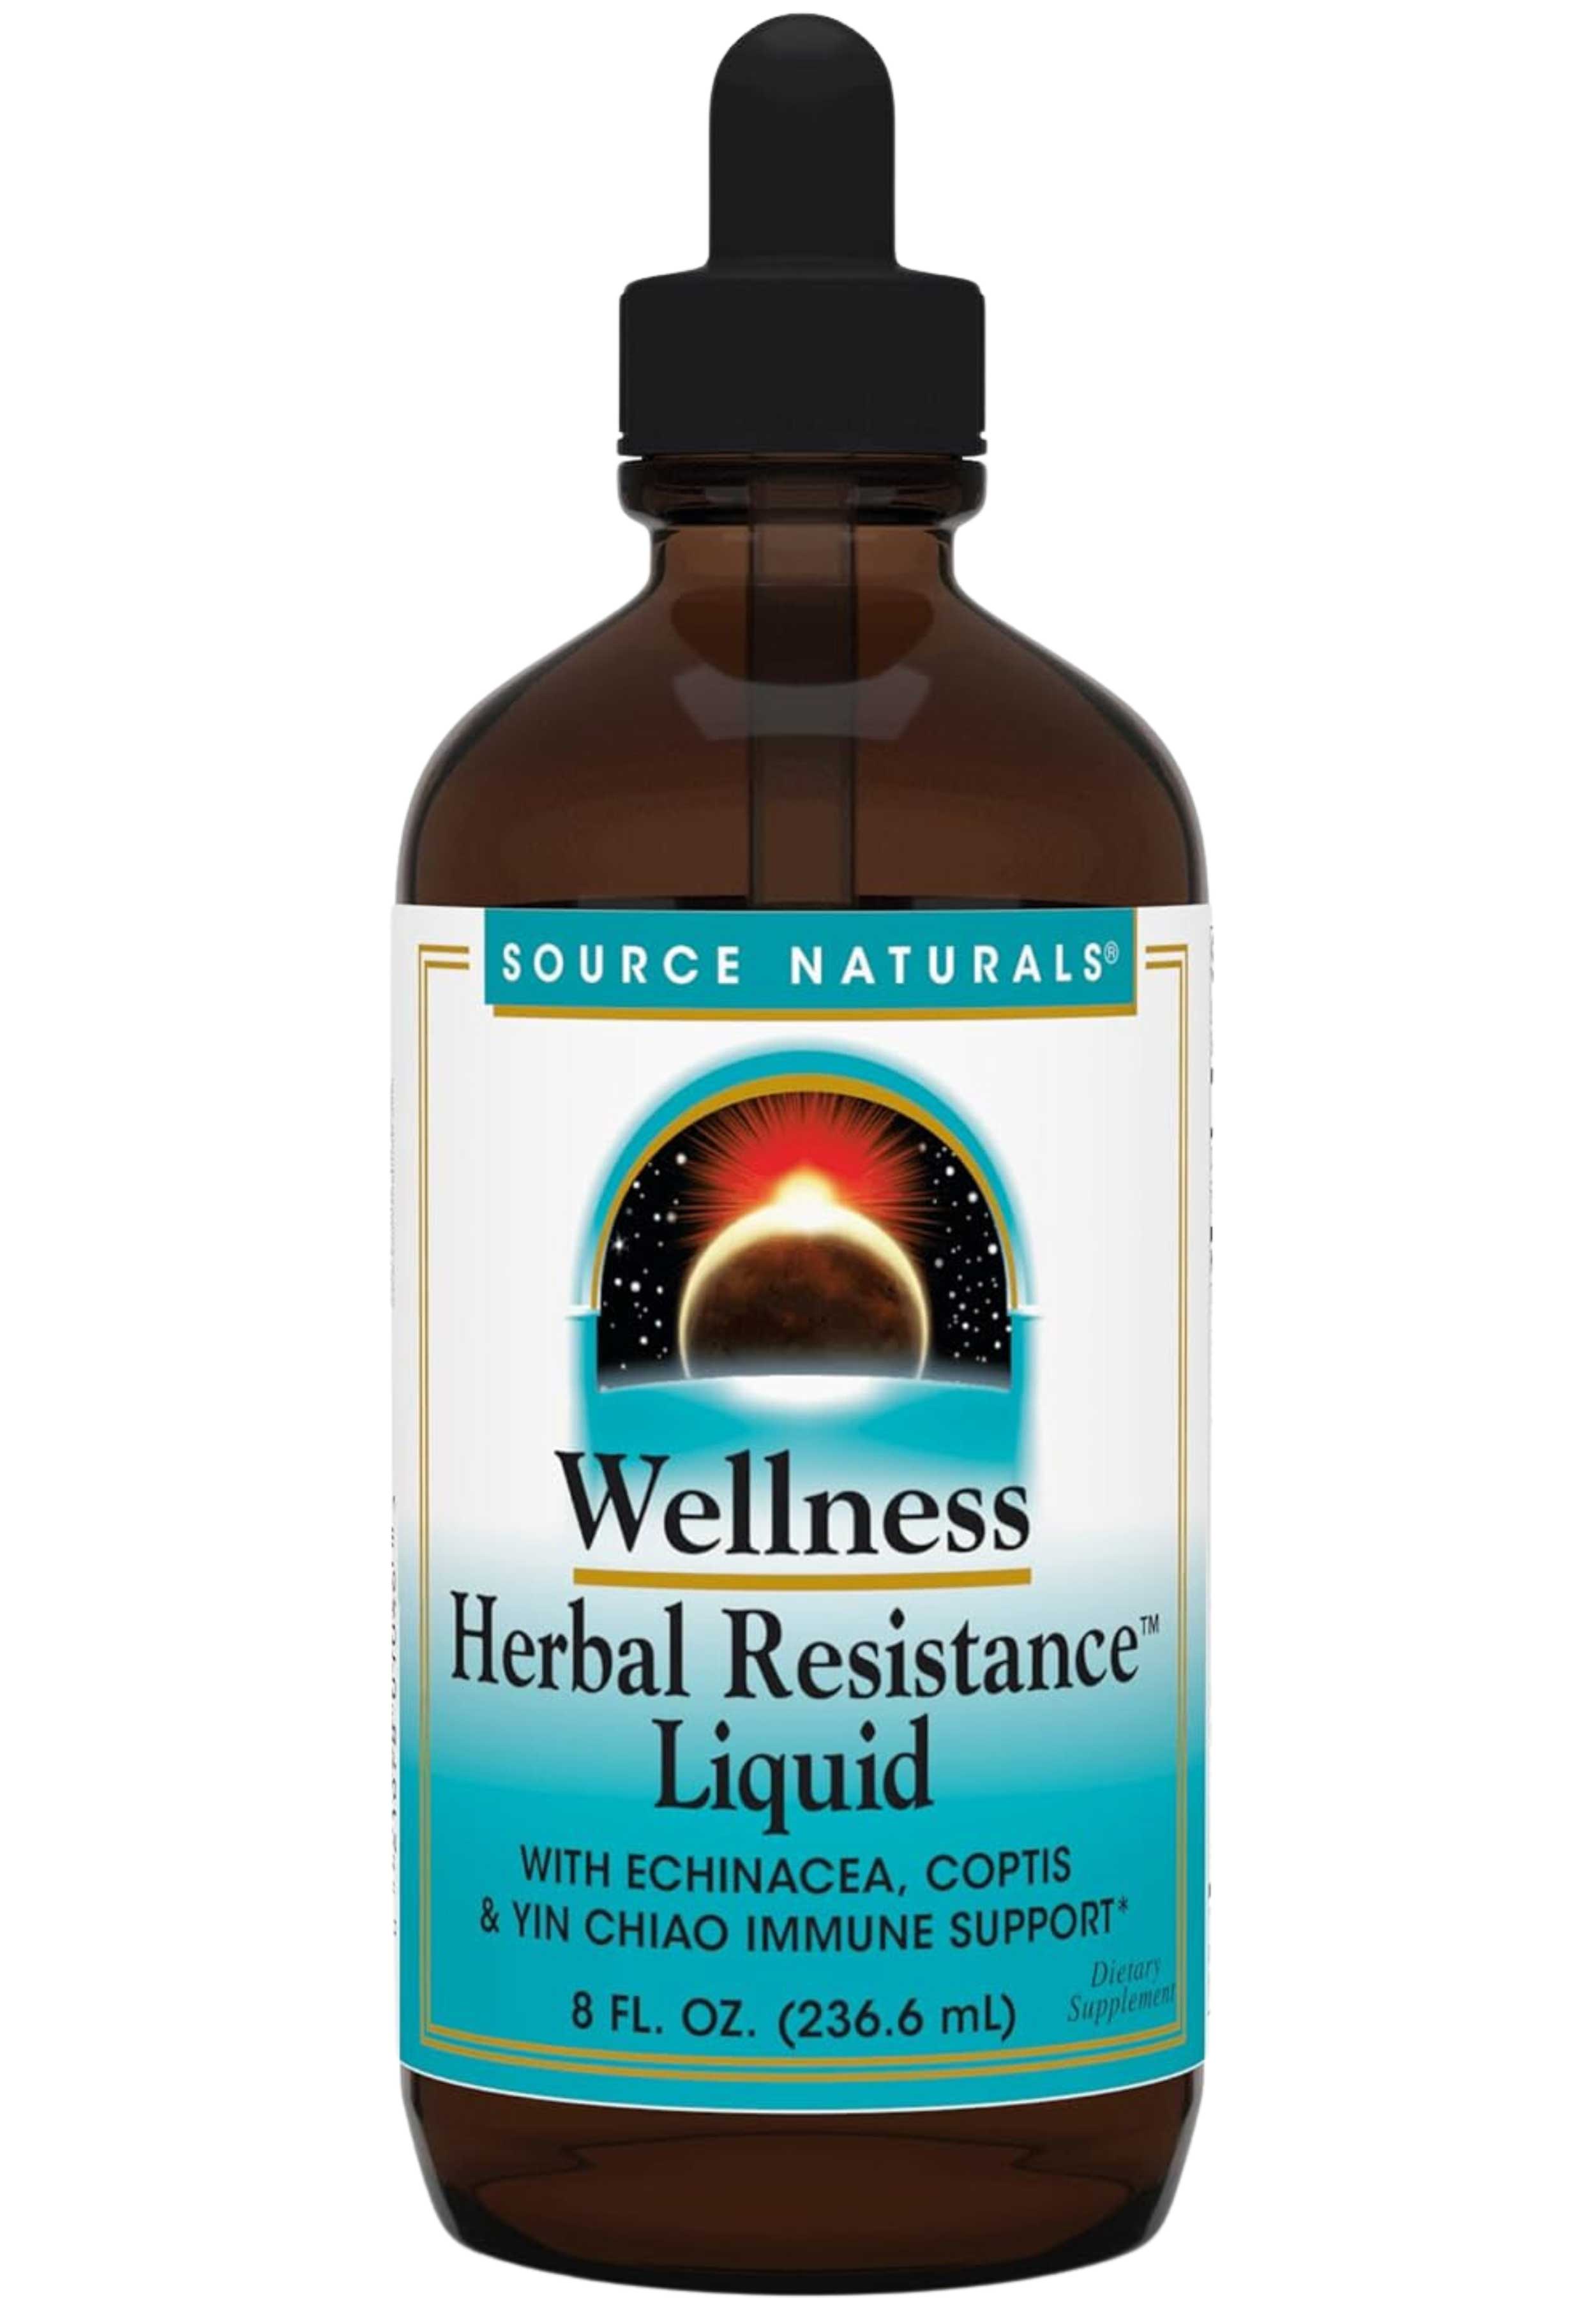 Source Naturals Wellness Herbal Resistance (liquid)